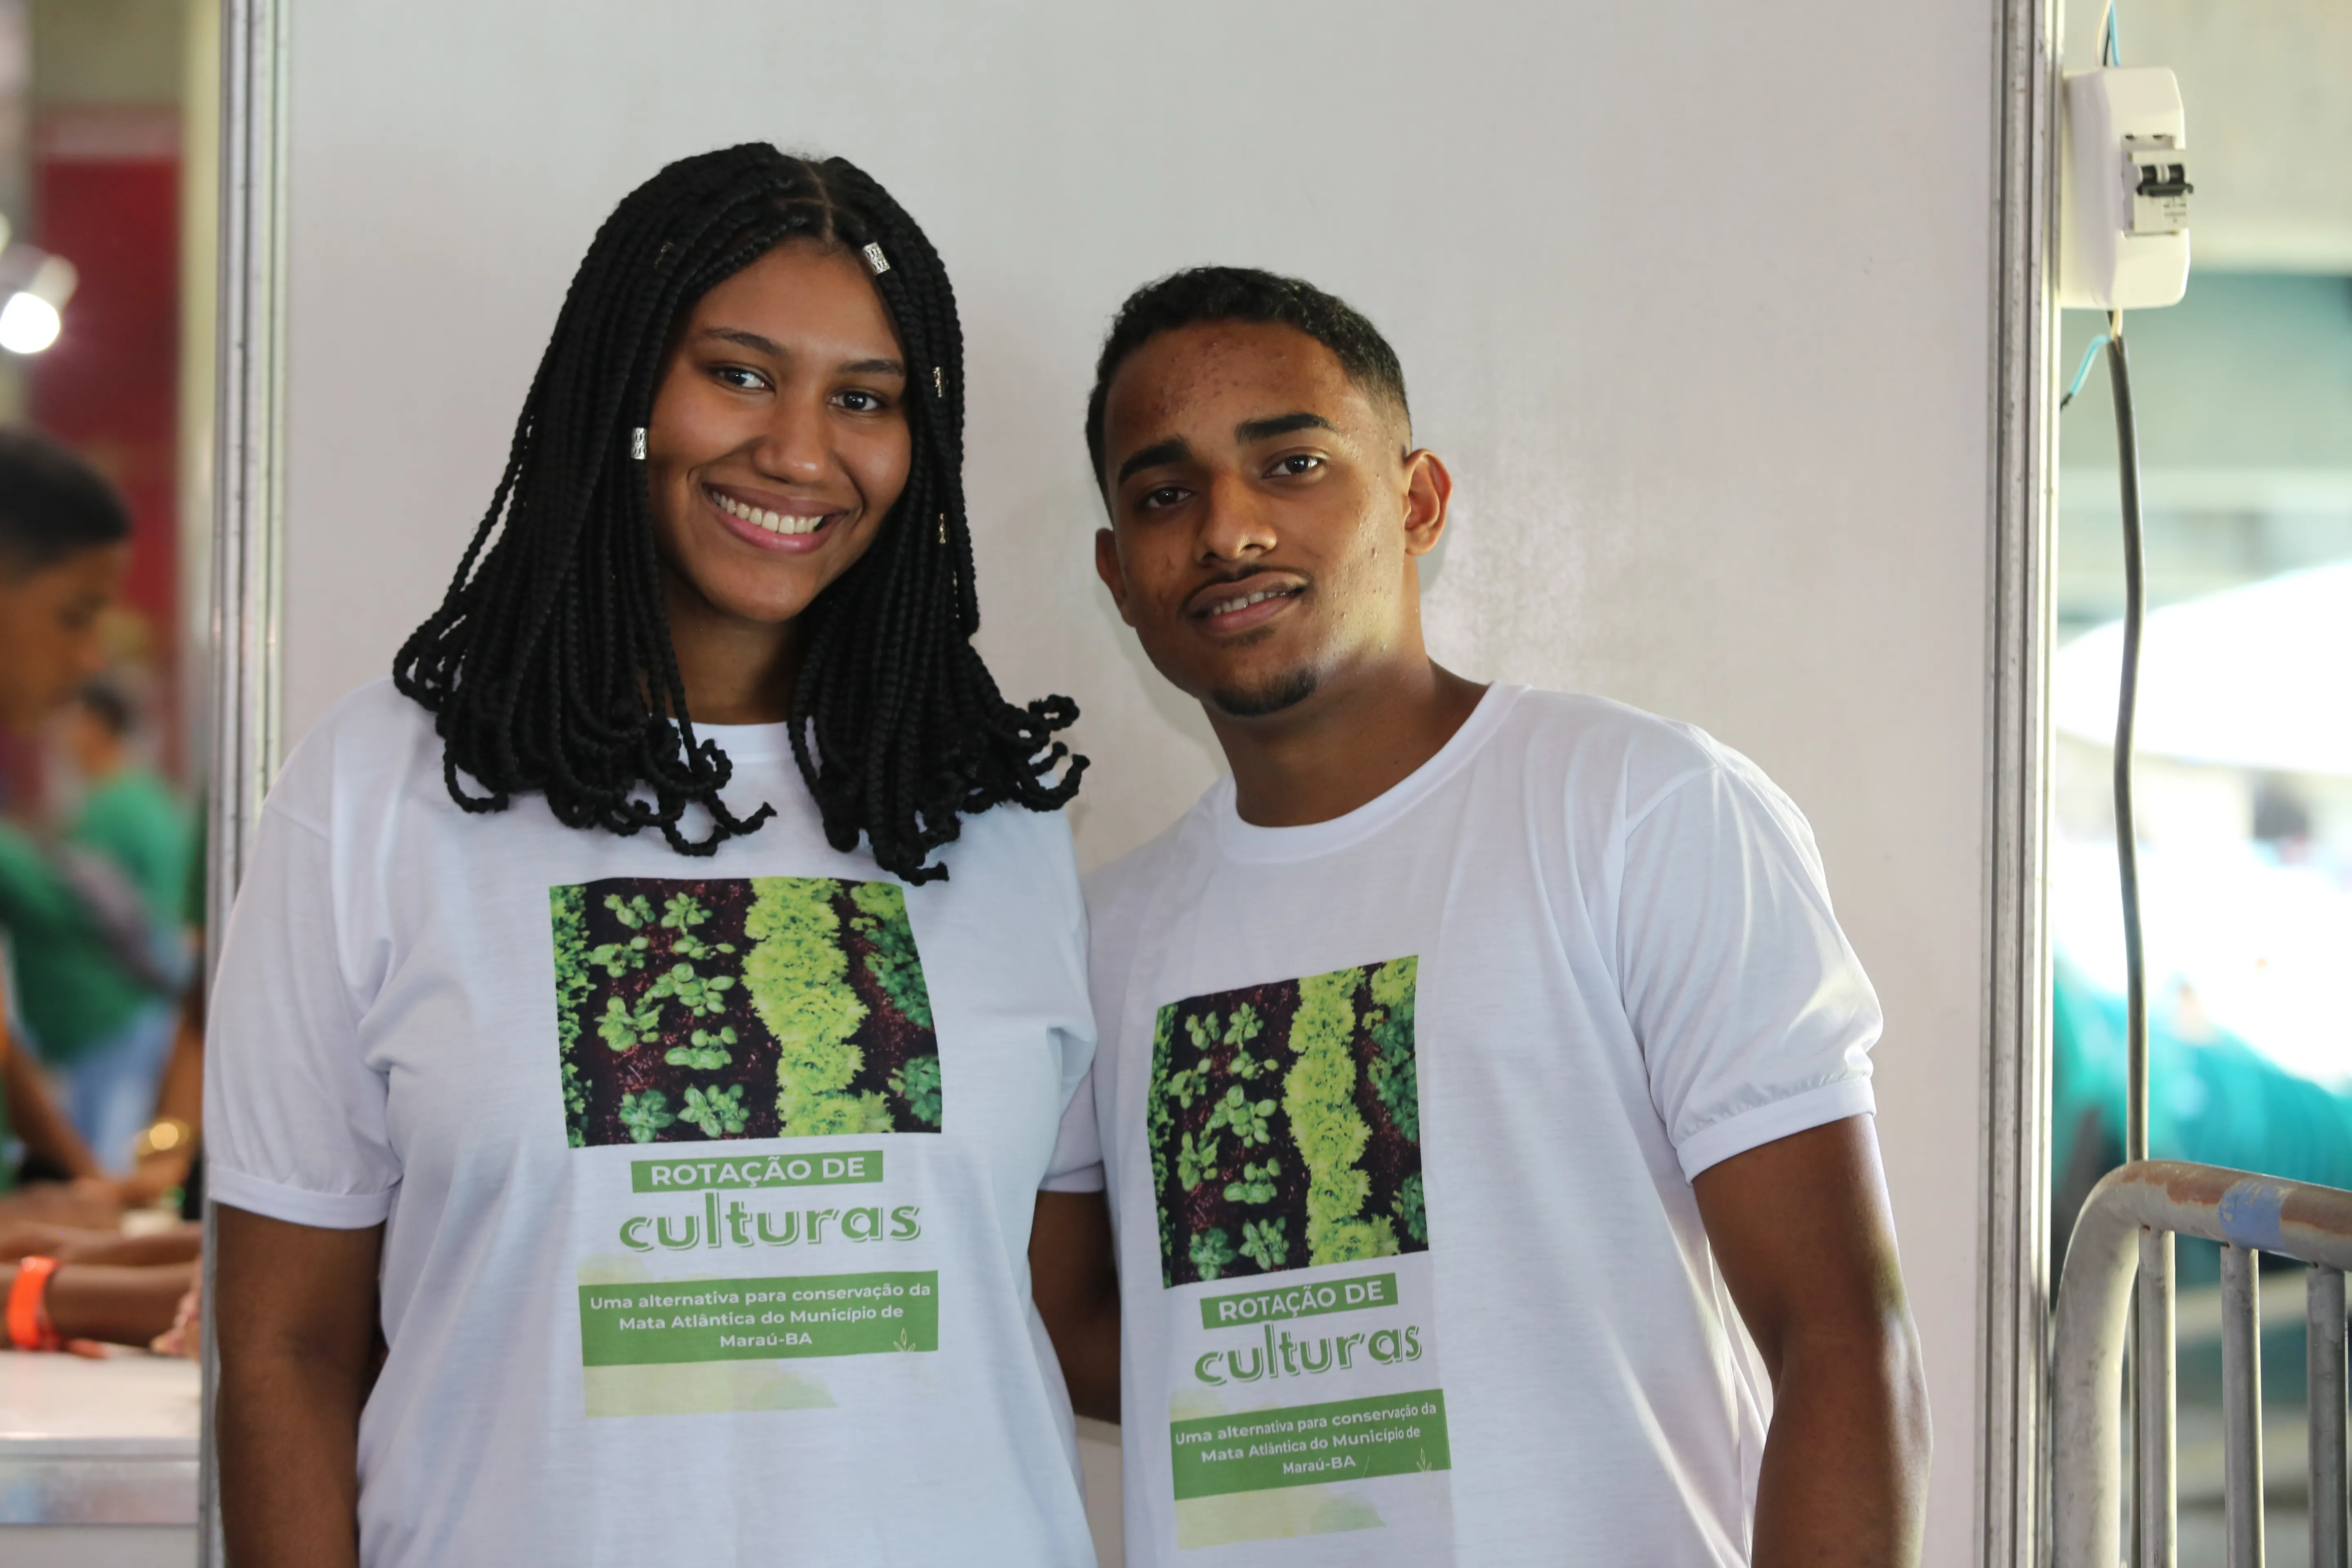 Mariana Nery e Davi Souza são do colégio estadual Clemente Mariani, Distrito de Ibiaçu, Maraú